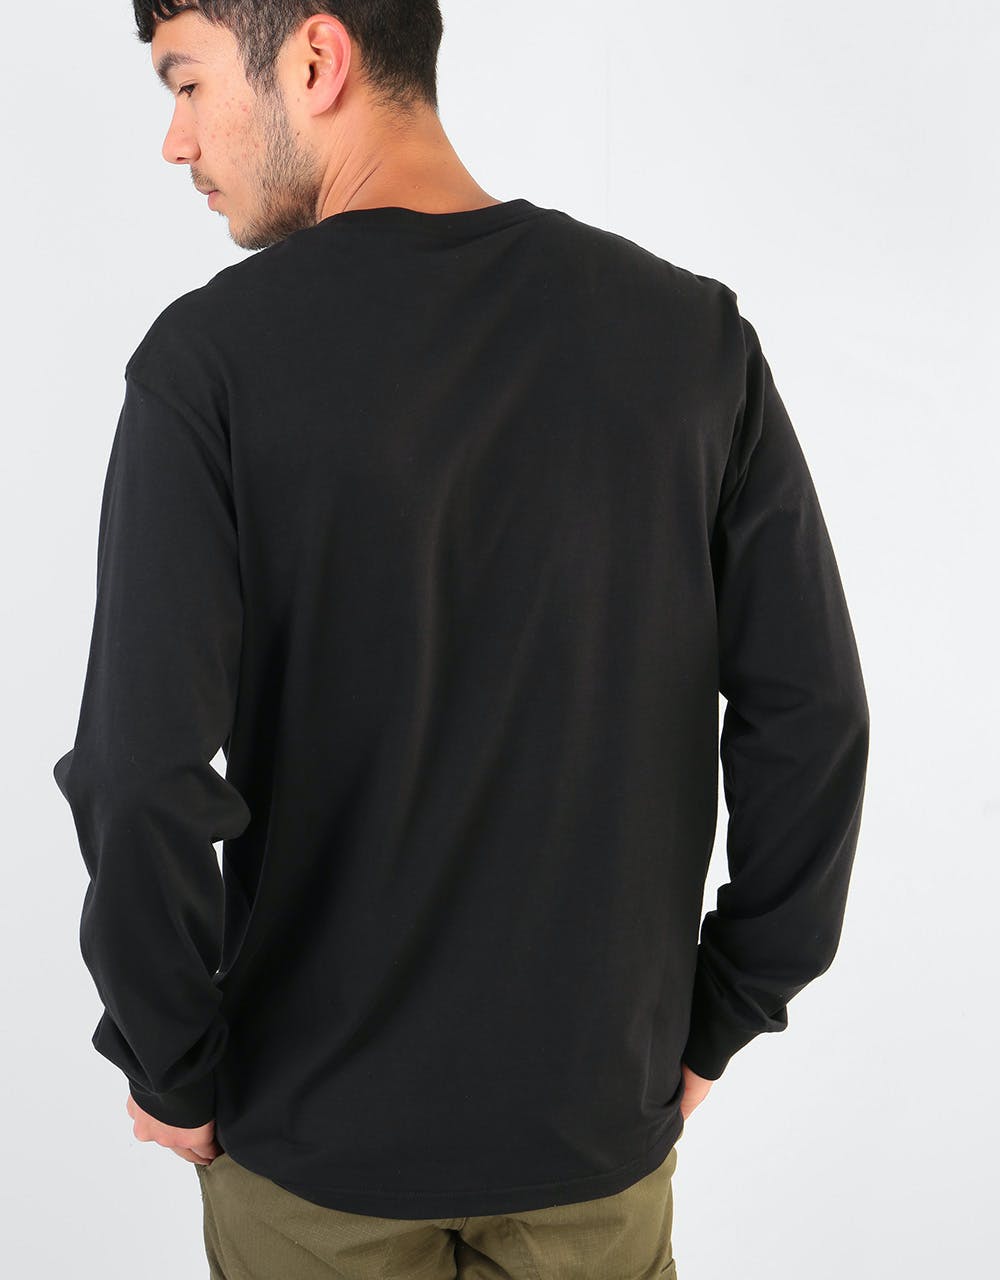 Carhartt WIP L/S Pocket T-Shirt - Black